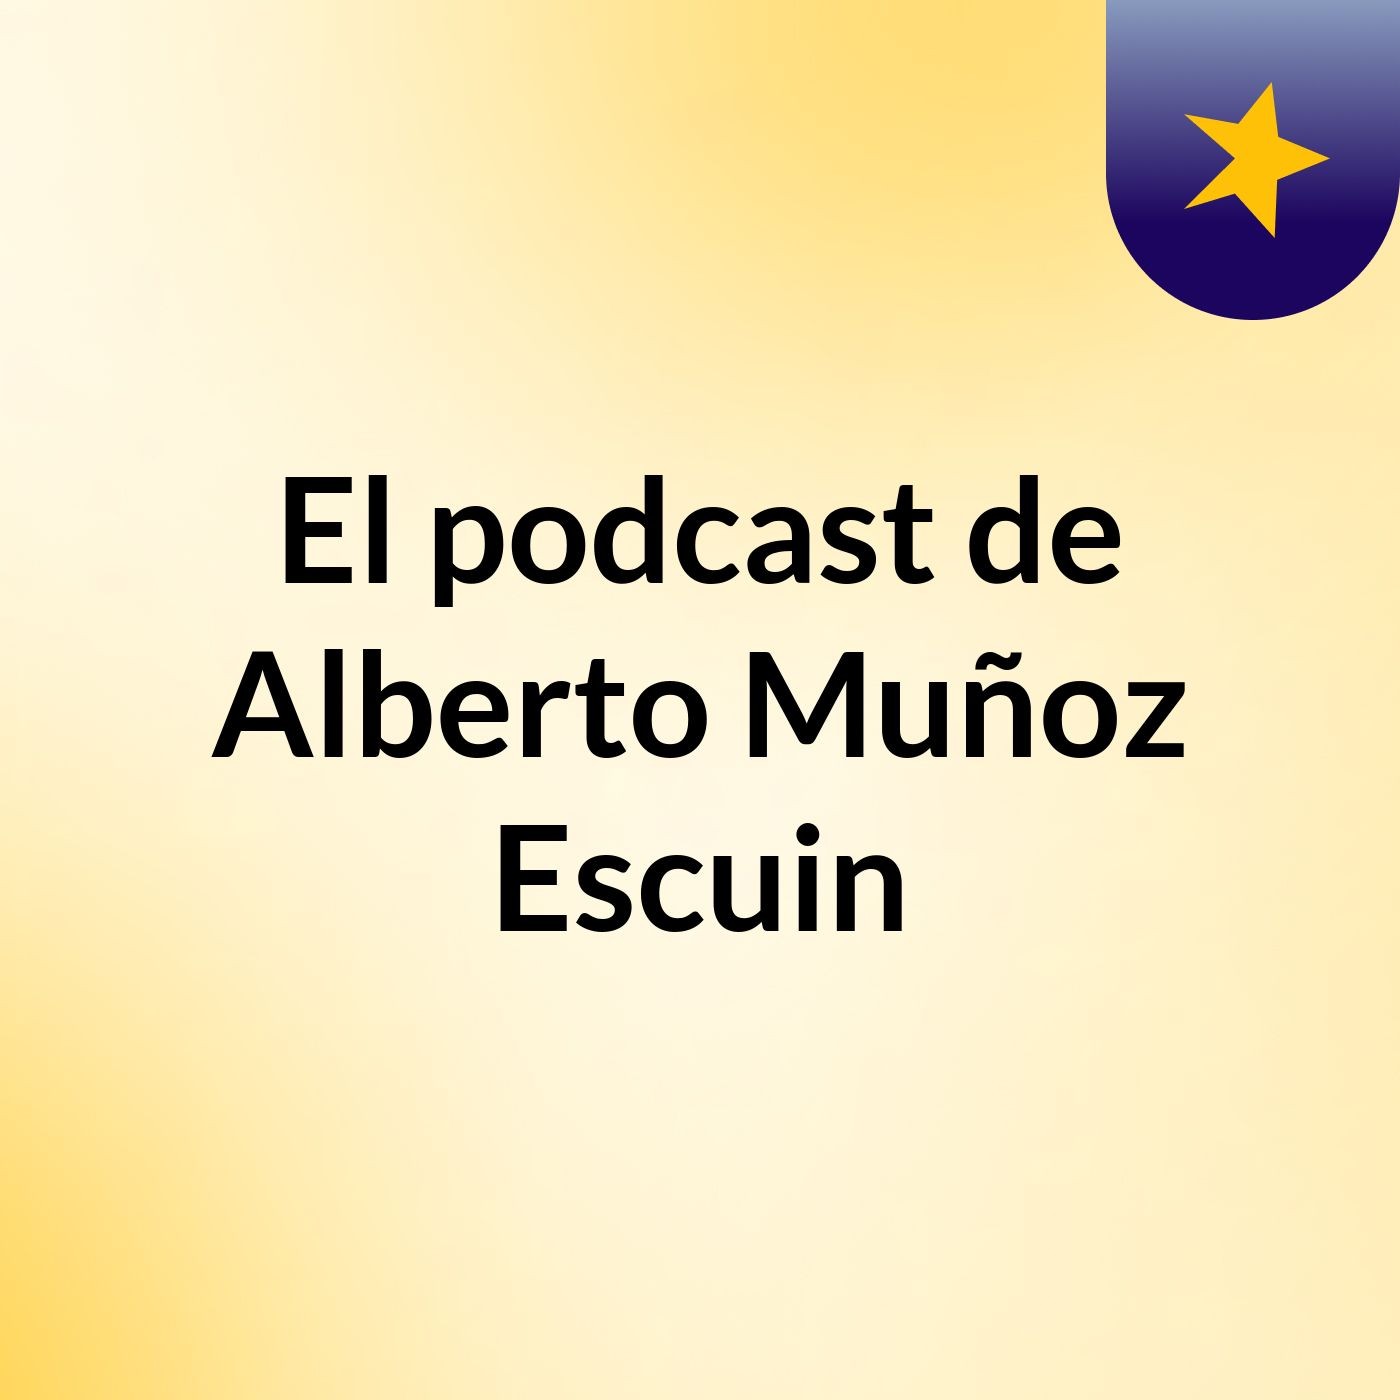 El podcast de Alberto Muñoz Escuin